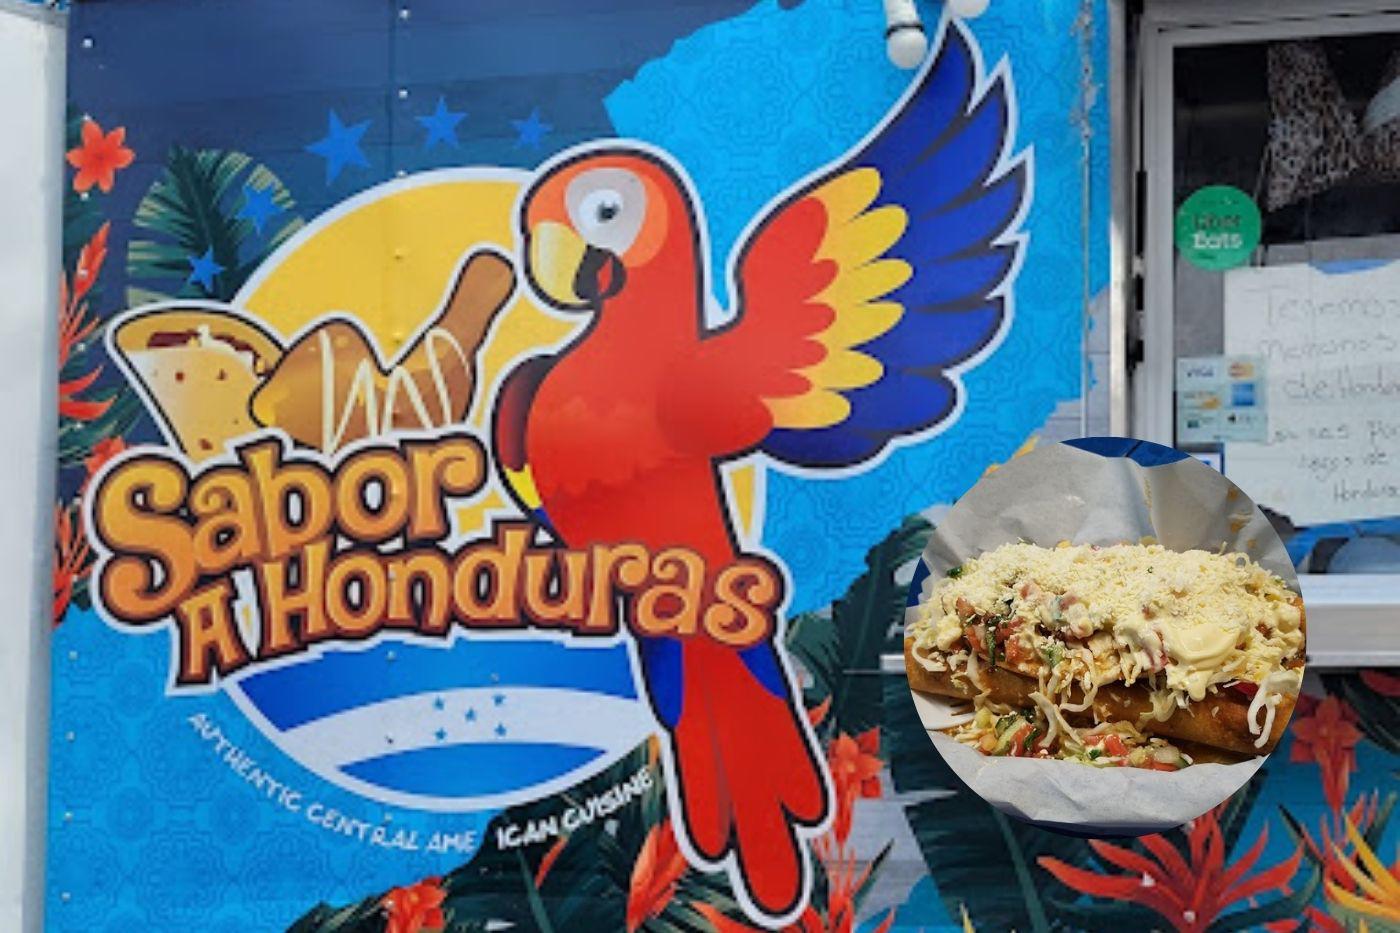 Restaurantes hondureños en Estados Unidos